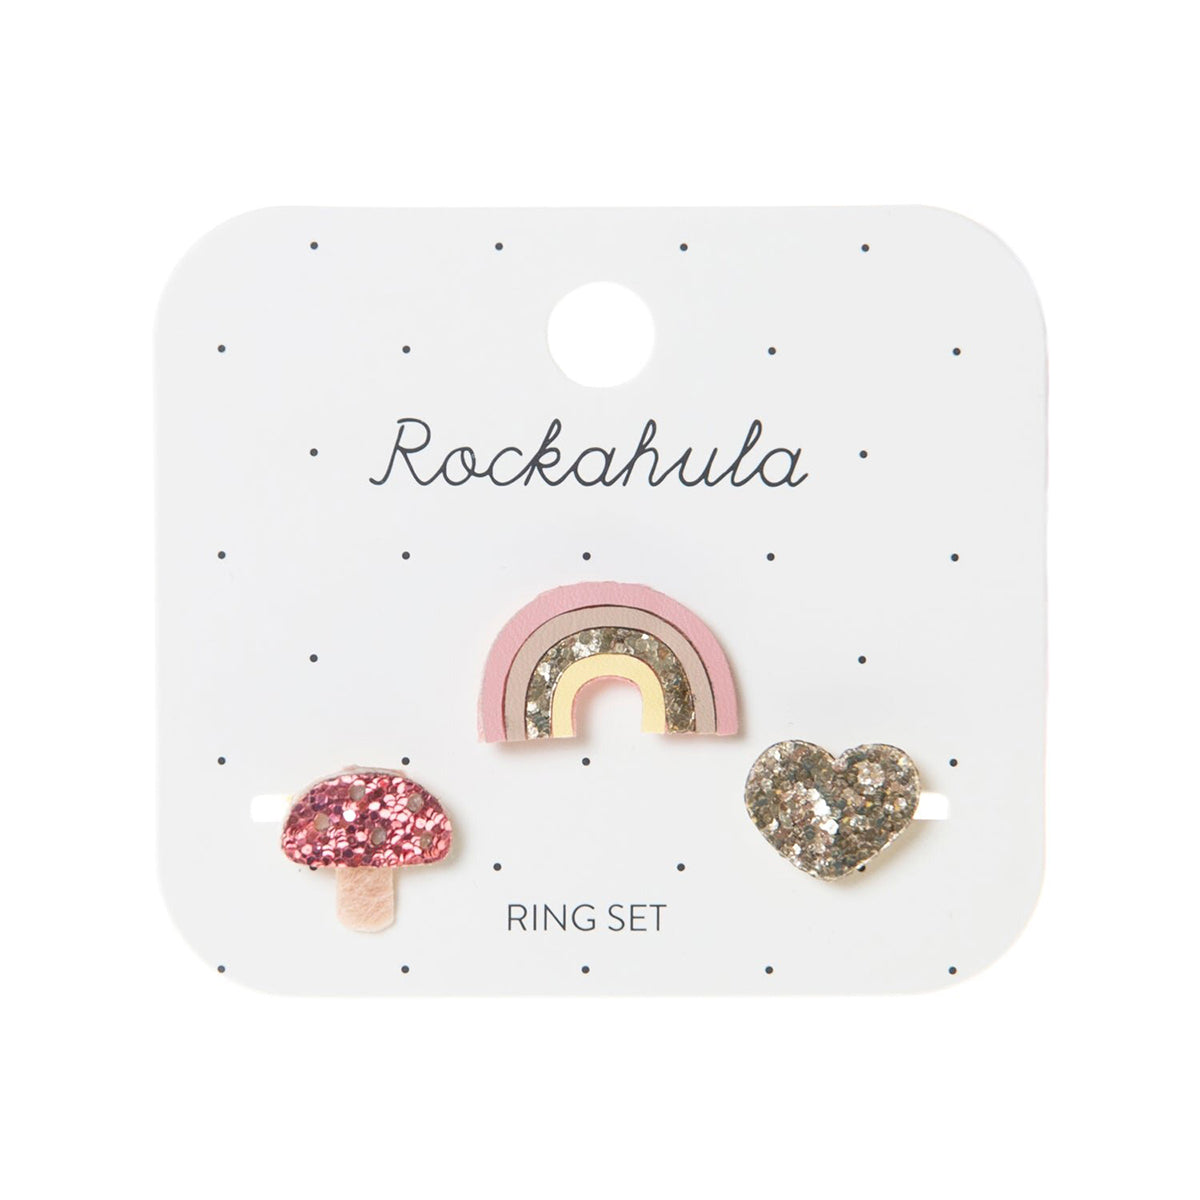 De set van Rockahula bestaat uit 3 hippe ringen uit de collectie magical rainbow. Versierd met een regenboog, hart en paddenstoel met subtiele glitter details en vrolijke kleuren. Verstelbaar. VanZus